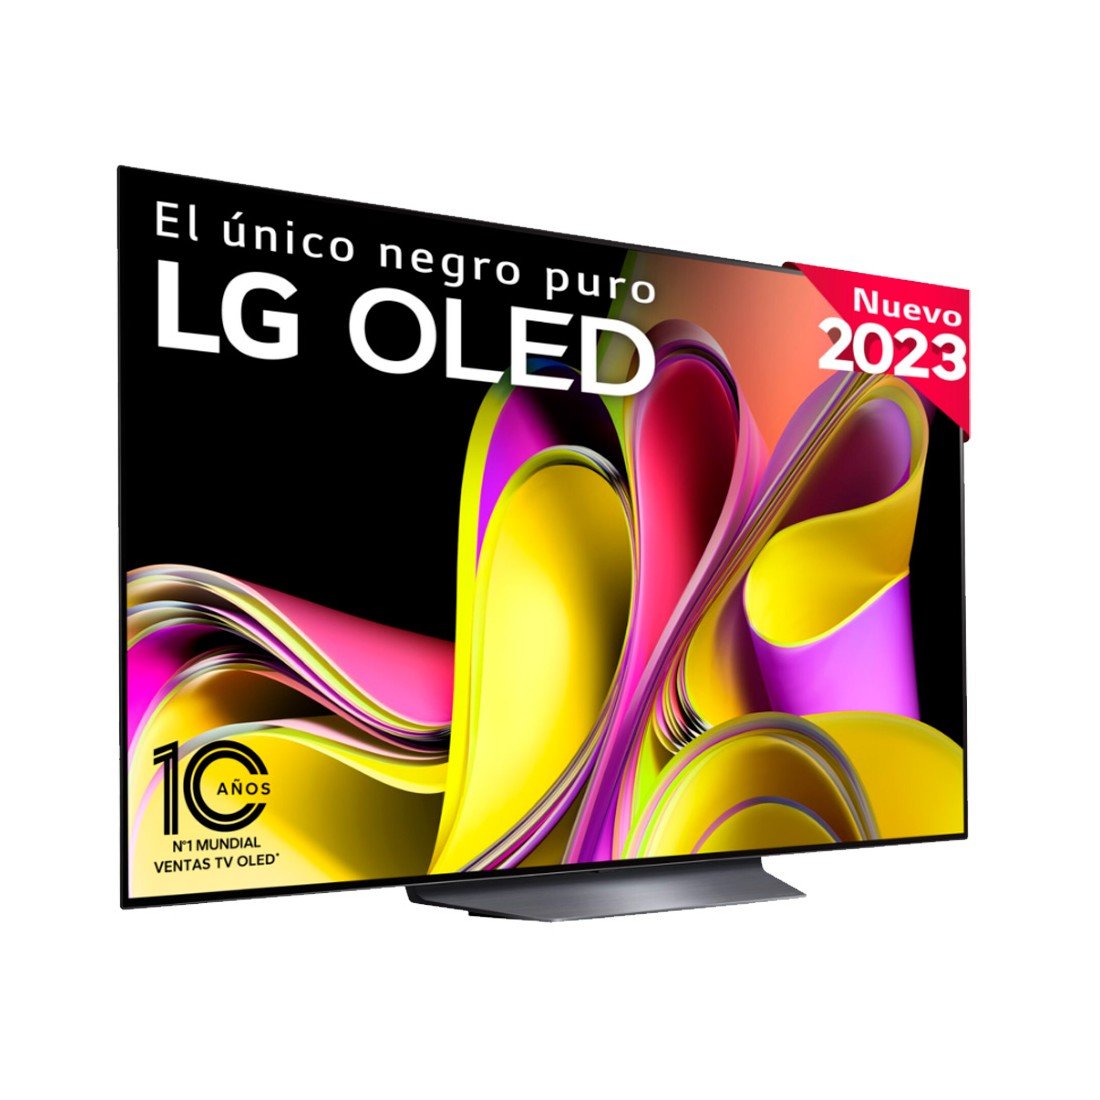  LG Televisor inteligente OLED OLED65B3PUA de 65 pulgadas serie  B3 de 65 pulgadas, 2023 - TV 4K alimentado por AI, Alexa integrado, negro :  Electrónica